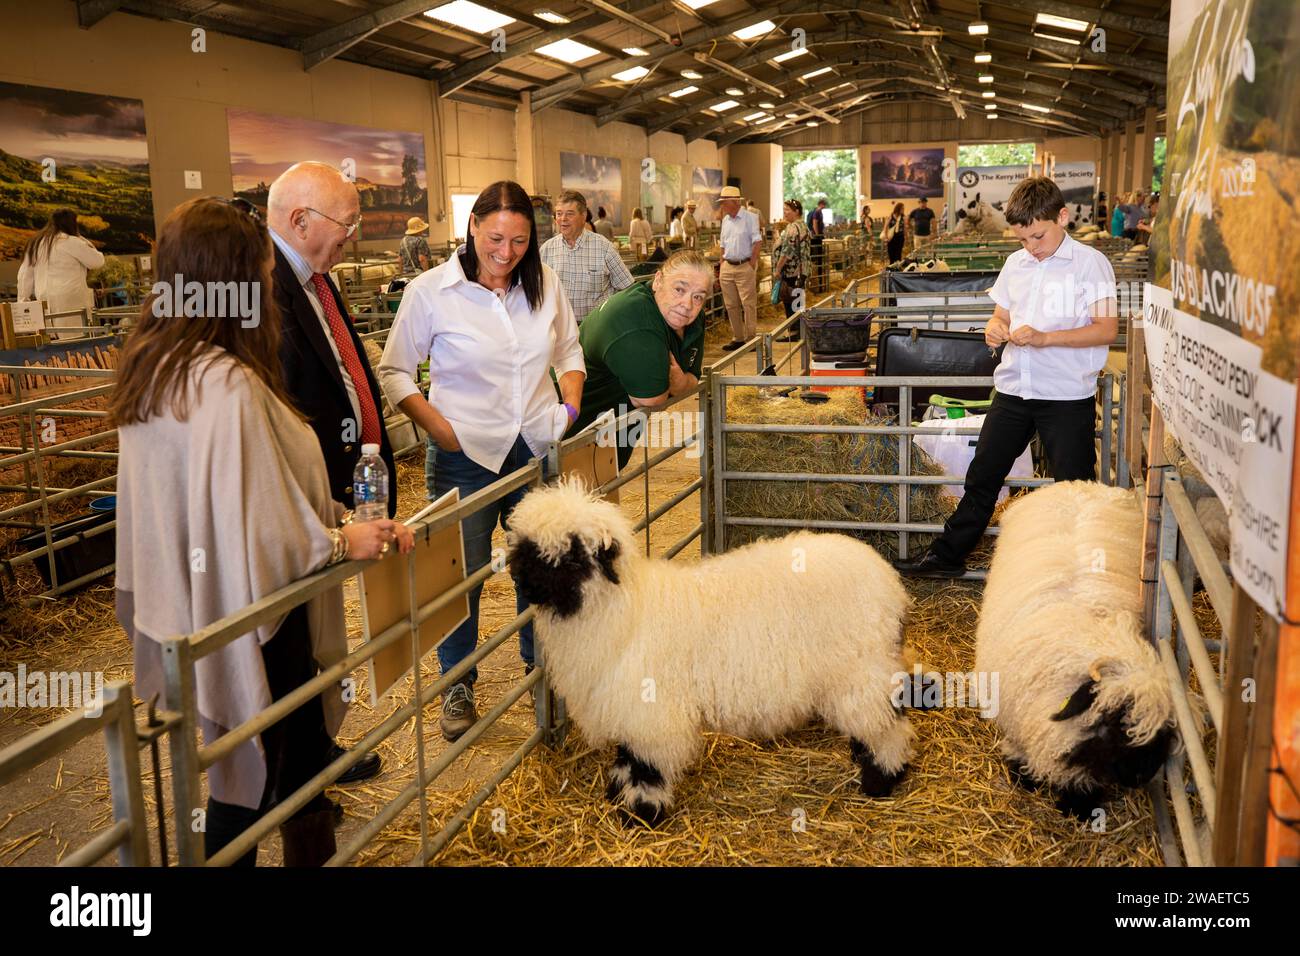 Royaume-Uni, Angleterre, Worcestershire, Malvern Wells, Royal 3 Counties Show, Valais mouton blacknose du troupeau de Sammia Shail de Birtmorton, Malvern en intérieur Banque D'Images